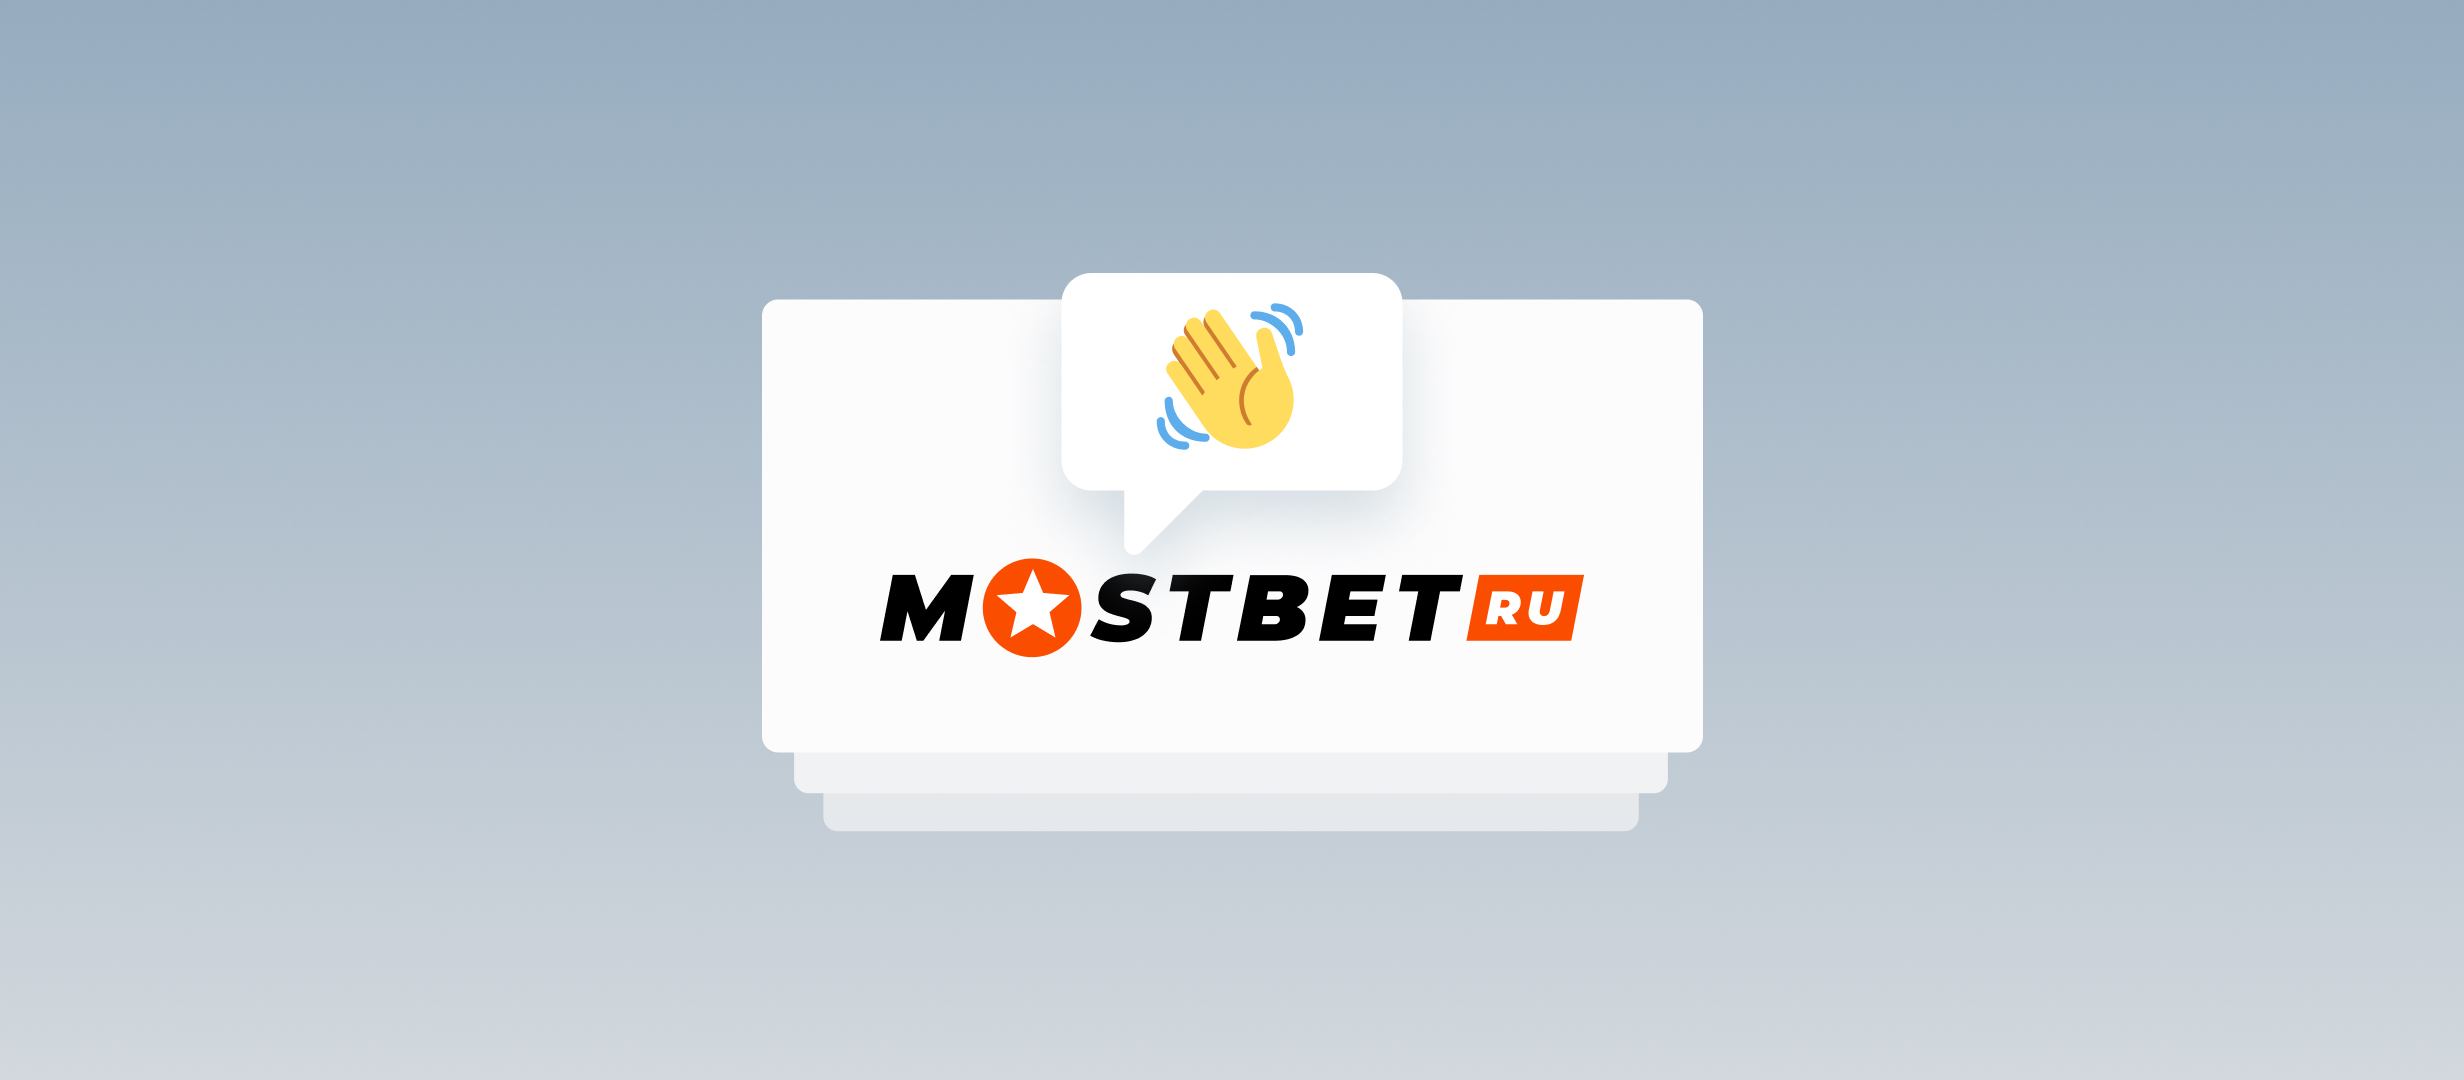 Официальное заявление Mostbet: компания покидает российский рынок